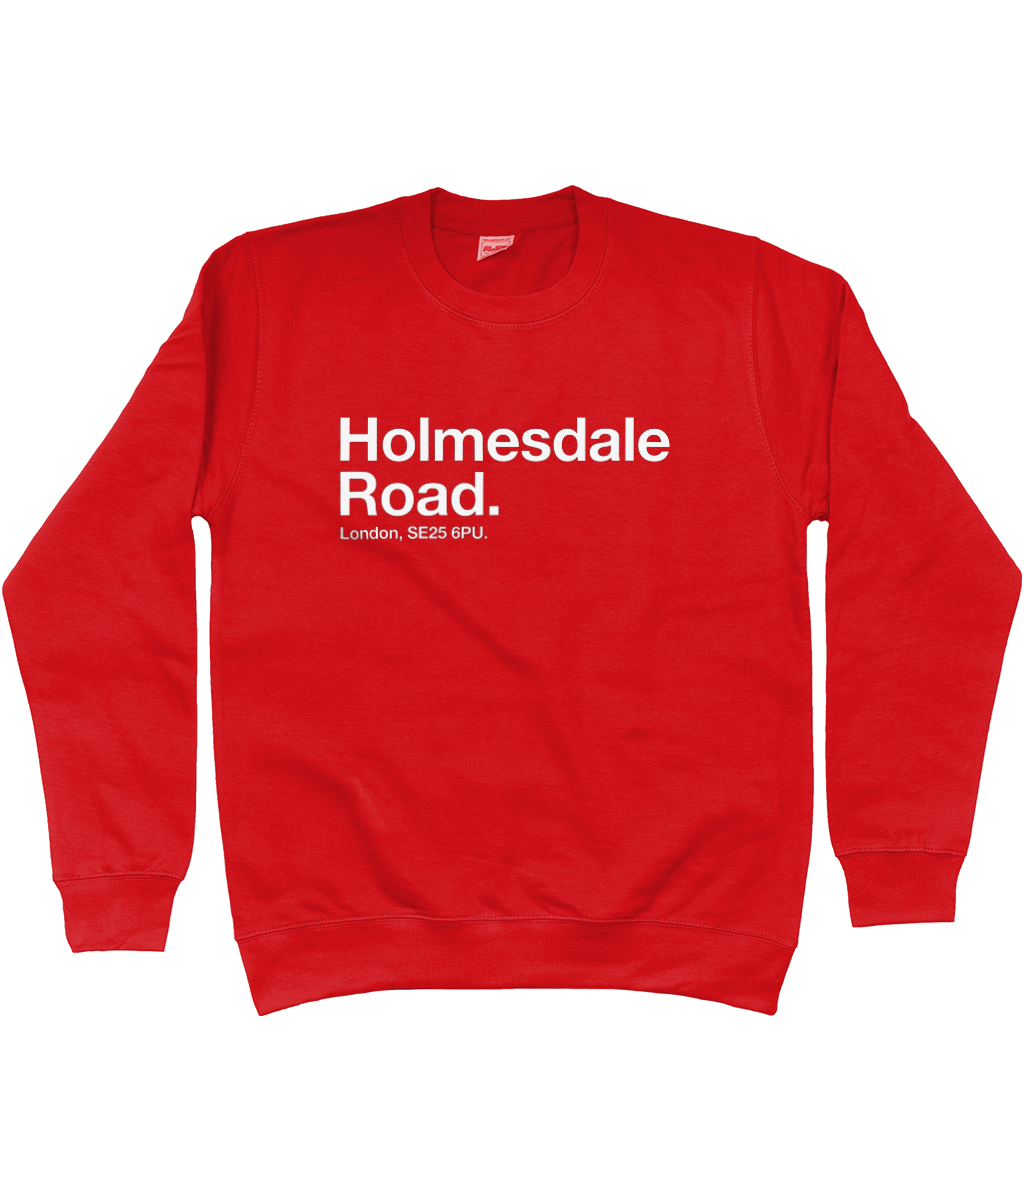 Holmesdale Road - Sweatshirt